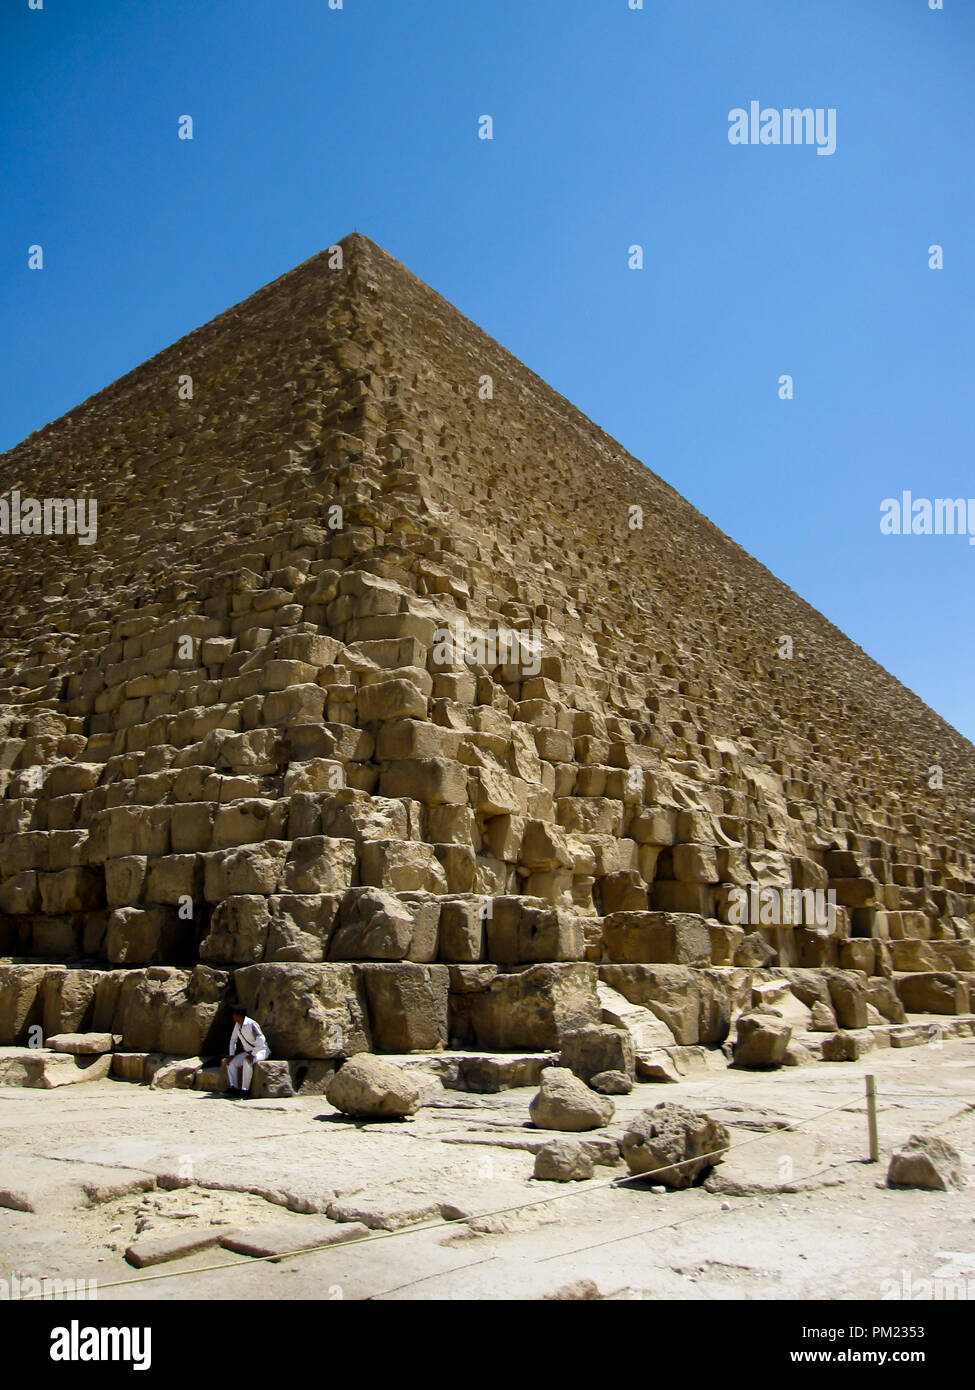 Die Große Pyramide von Gizeh, auch als Khufu oder Cheops, ein wichtiges touristisches Ziel und archäologische Stätte in Gizeh, Ägypten bekannt Stockfoto